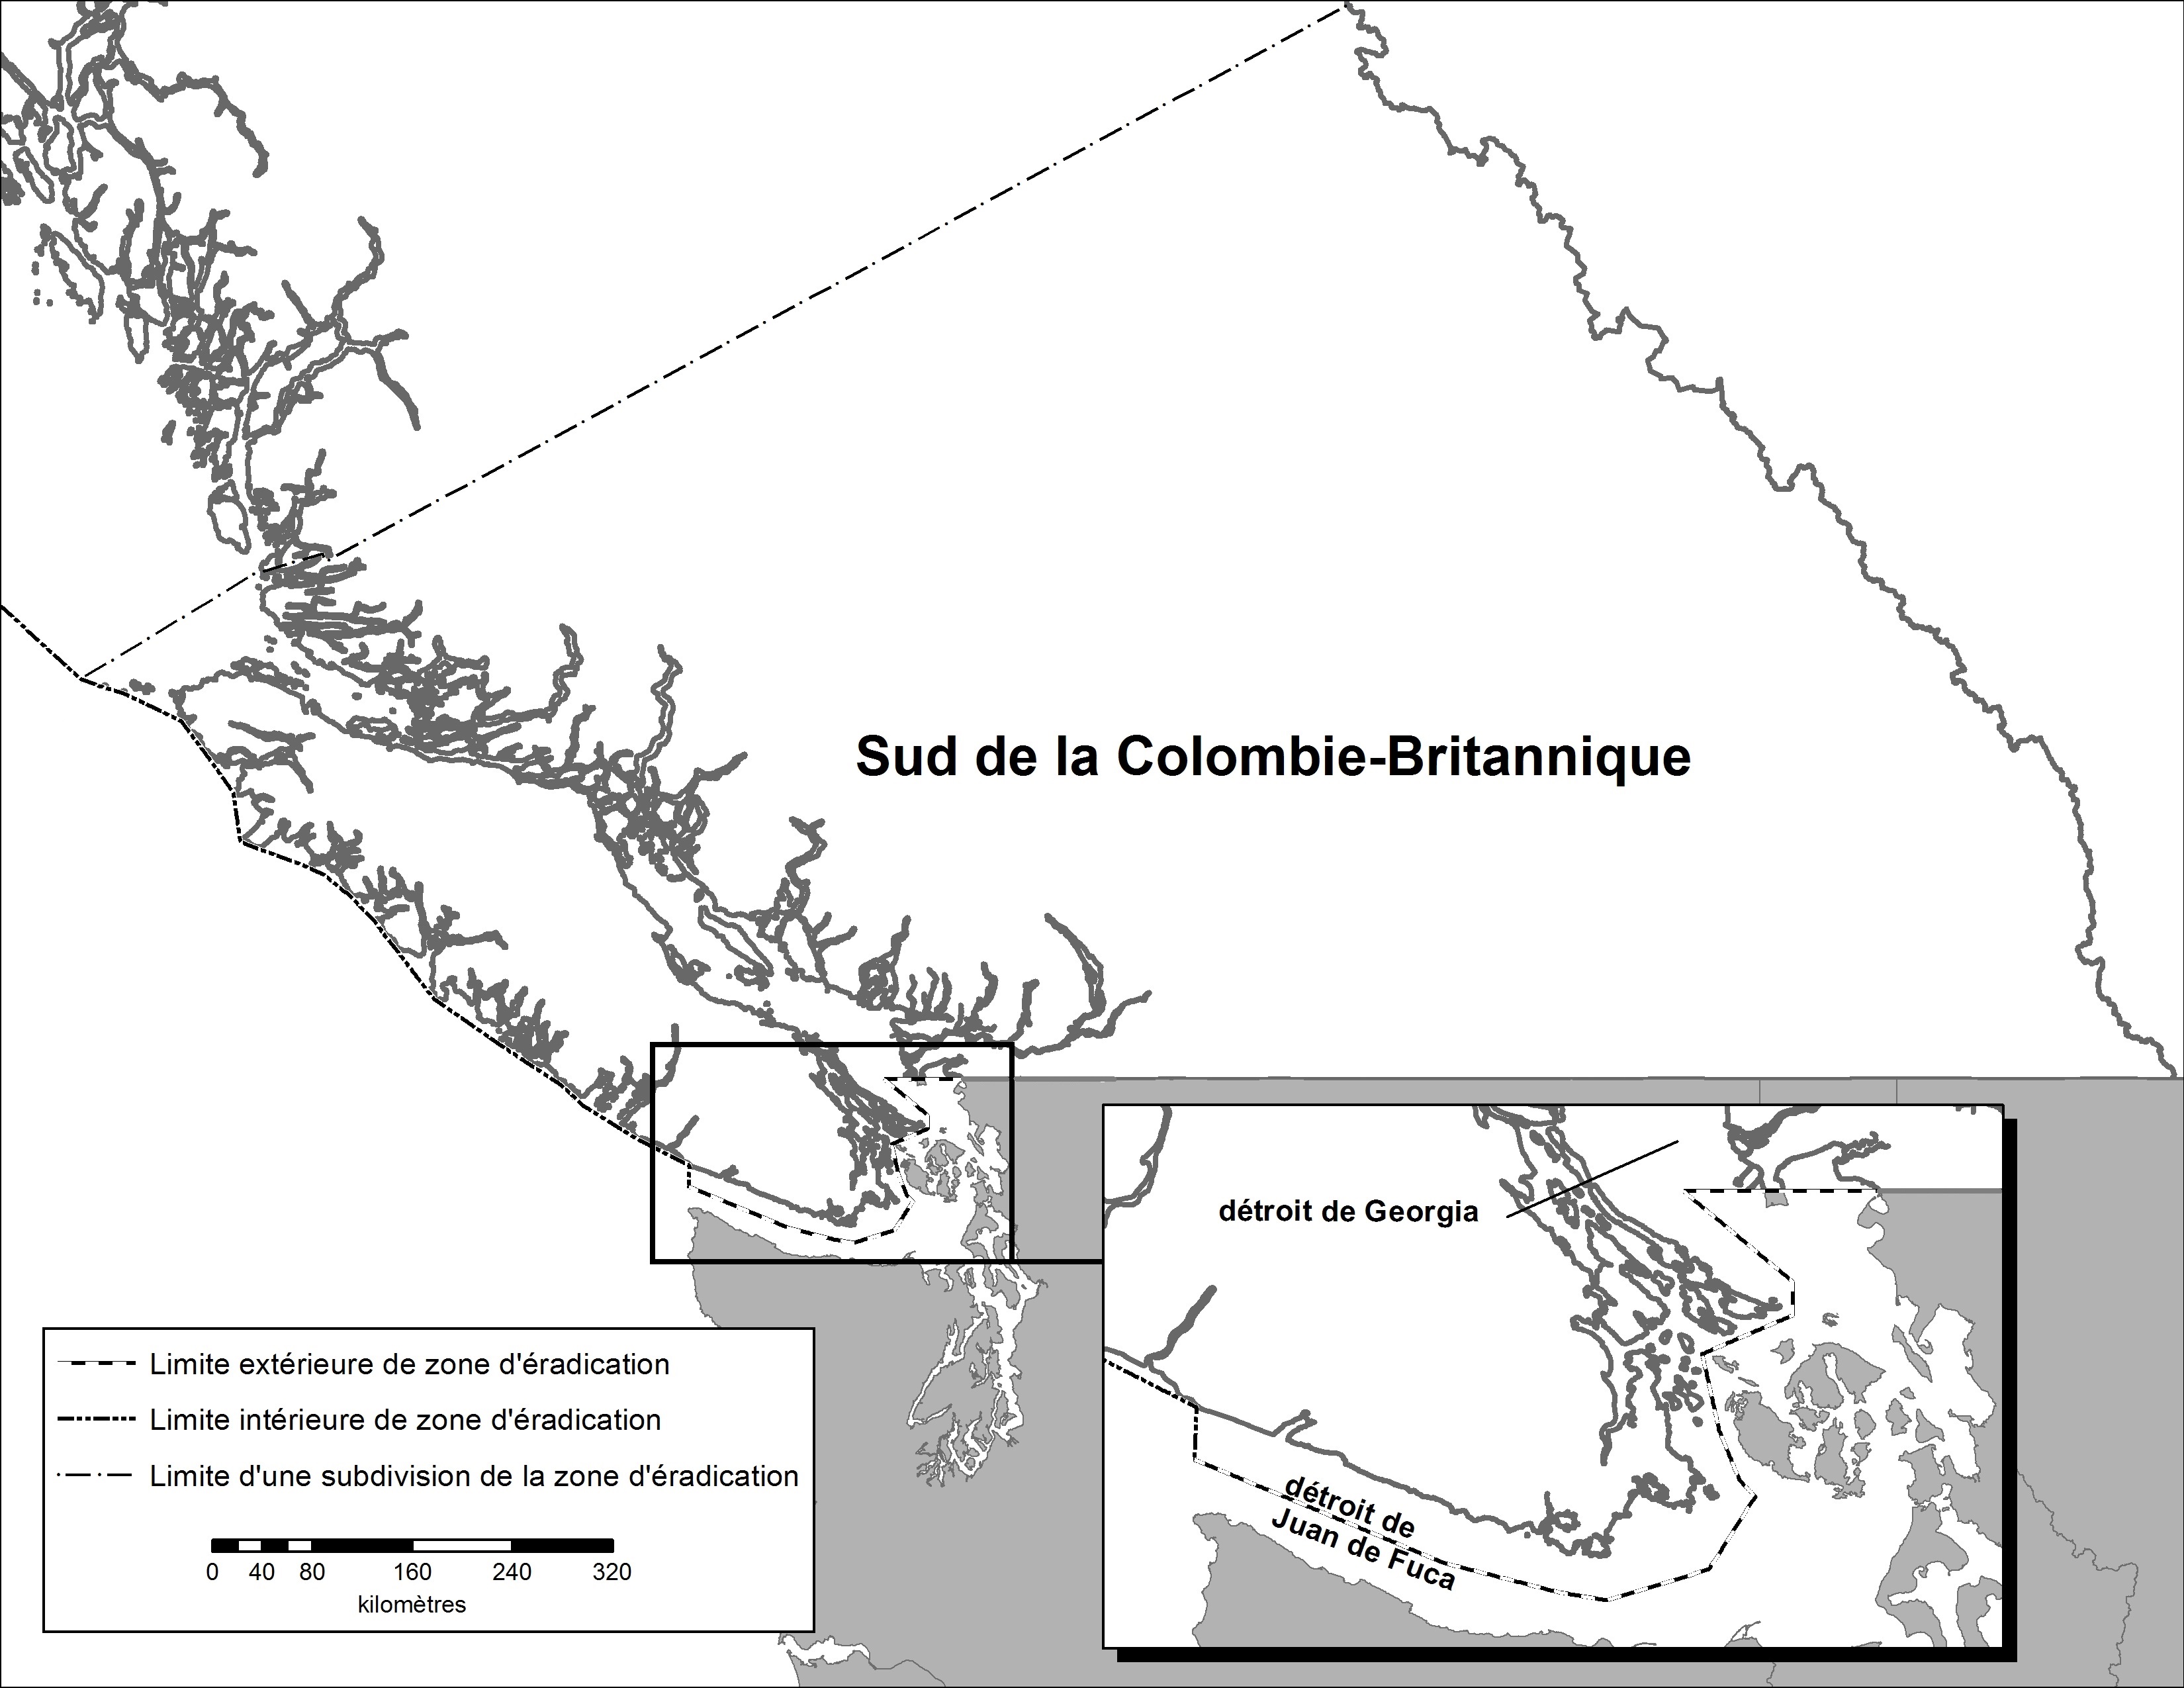 Sud de la Colombie-Britannique – Carte de la région déclarée. Description ci-dessous.